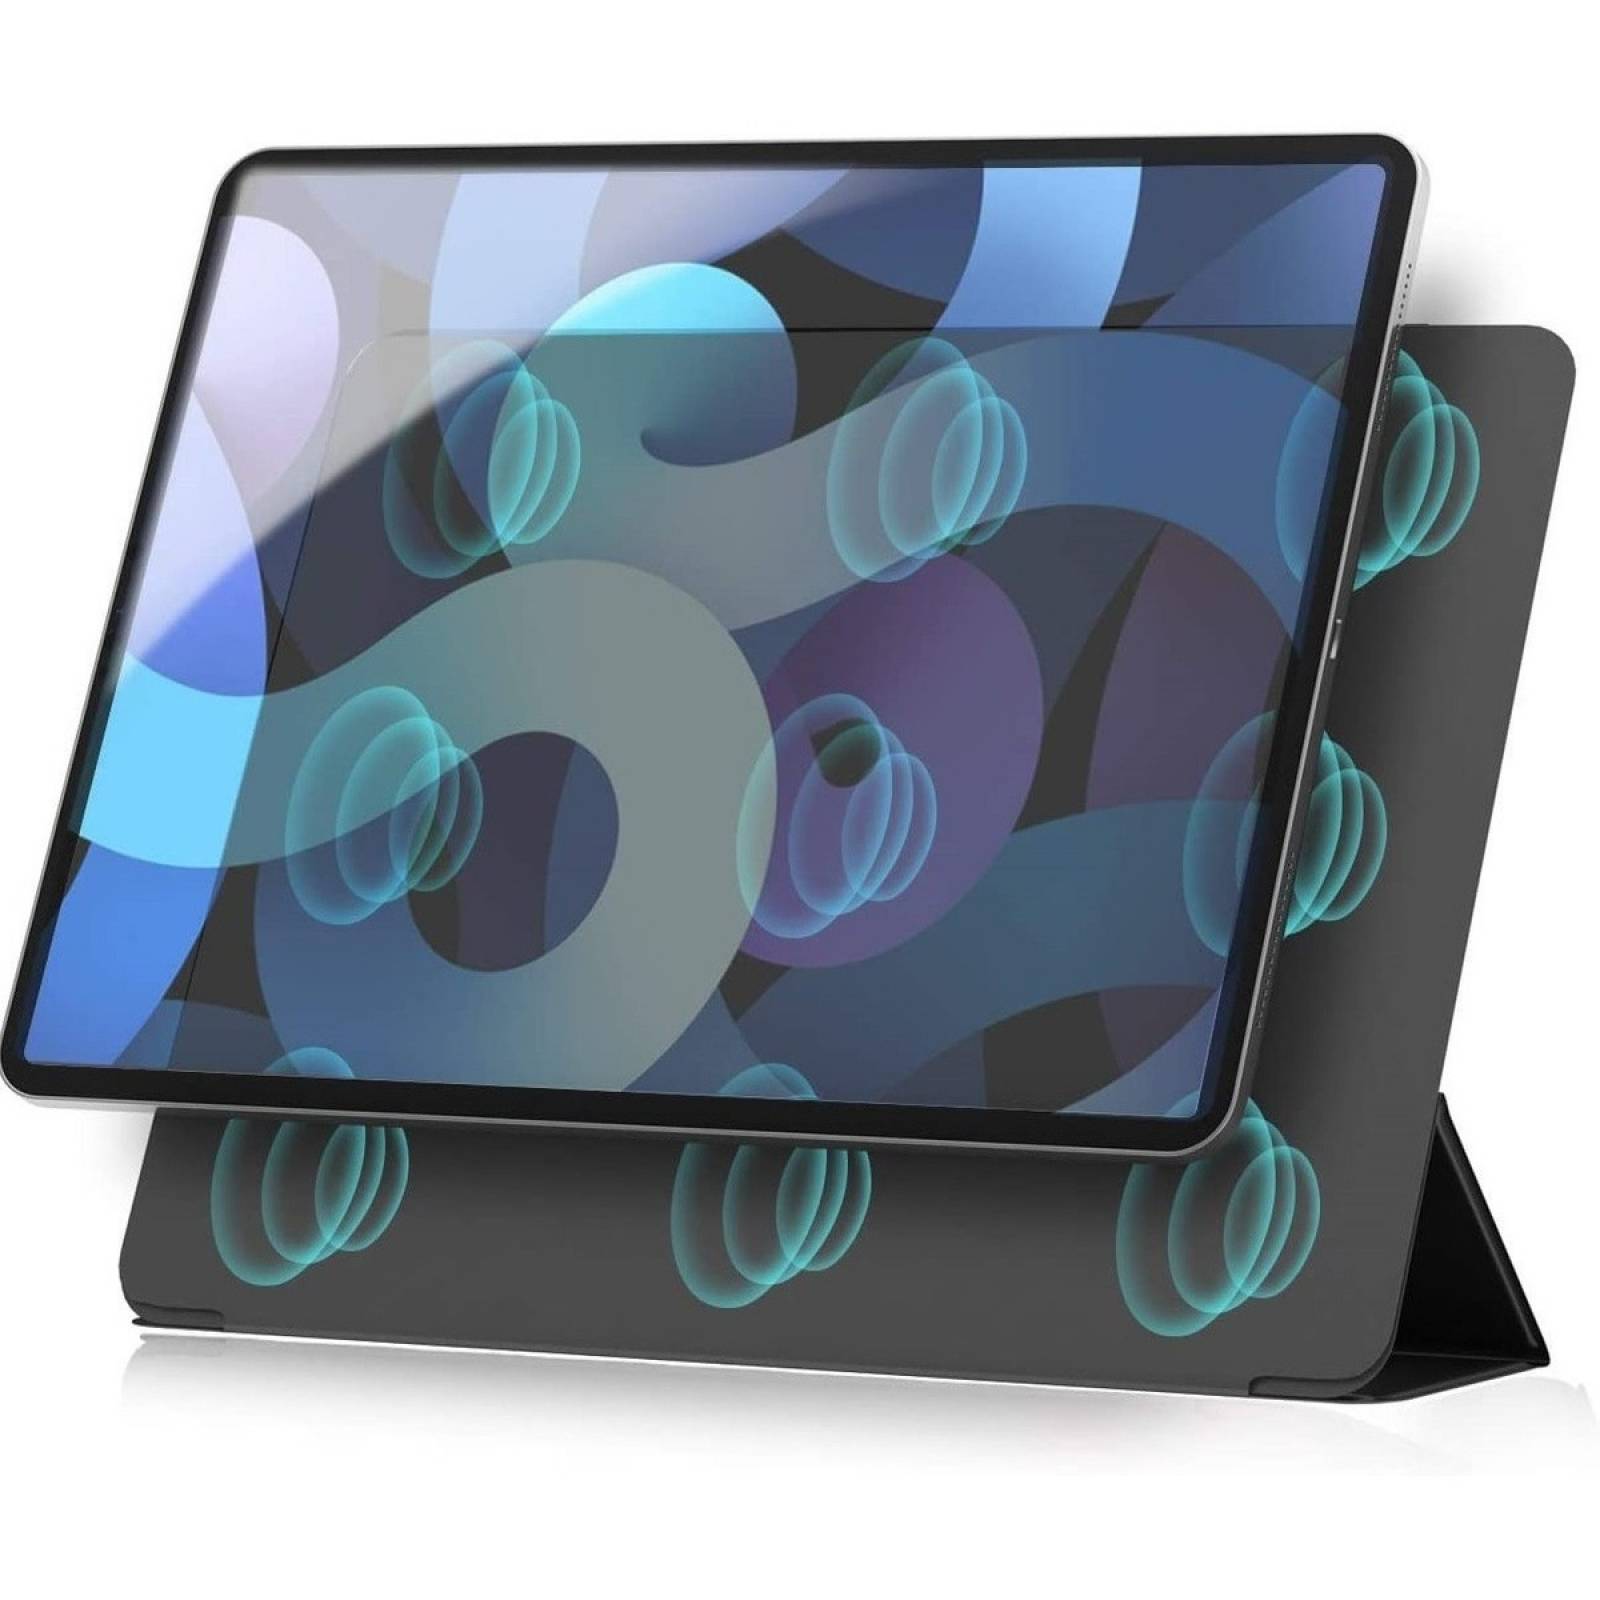 Funda Teknet Case iPad Air 4 10.9 A2316 A2072 A2324 Magnetic